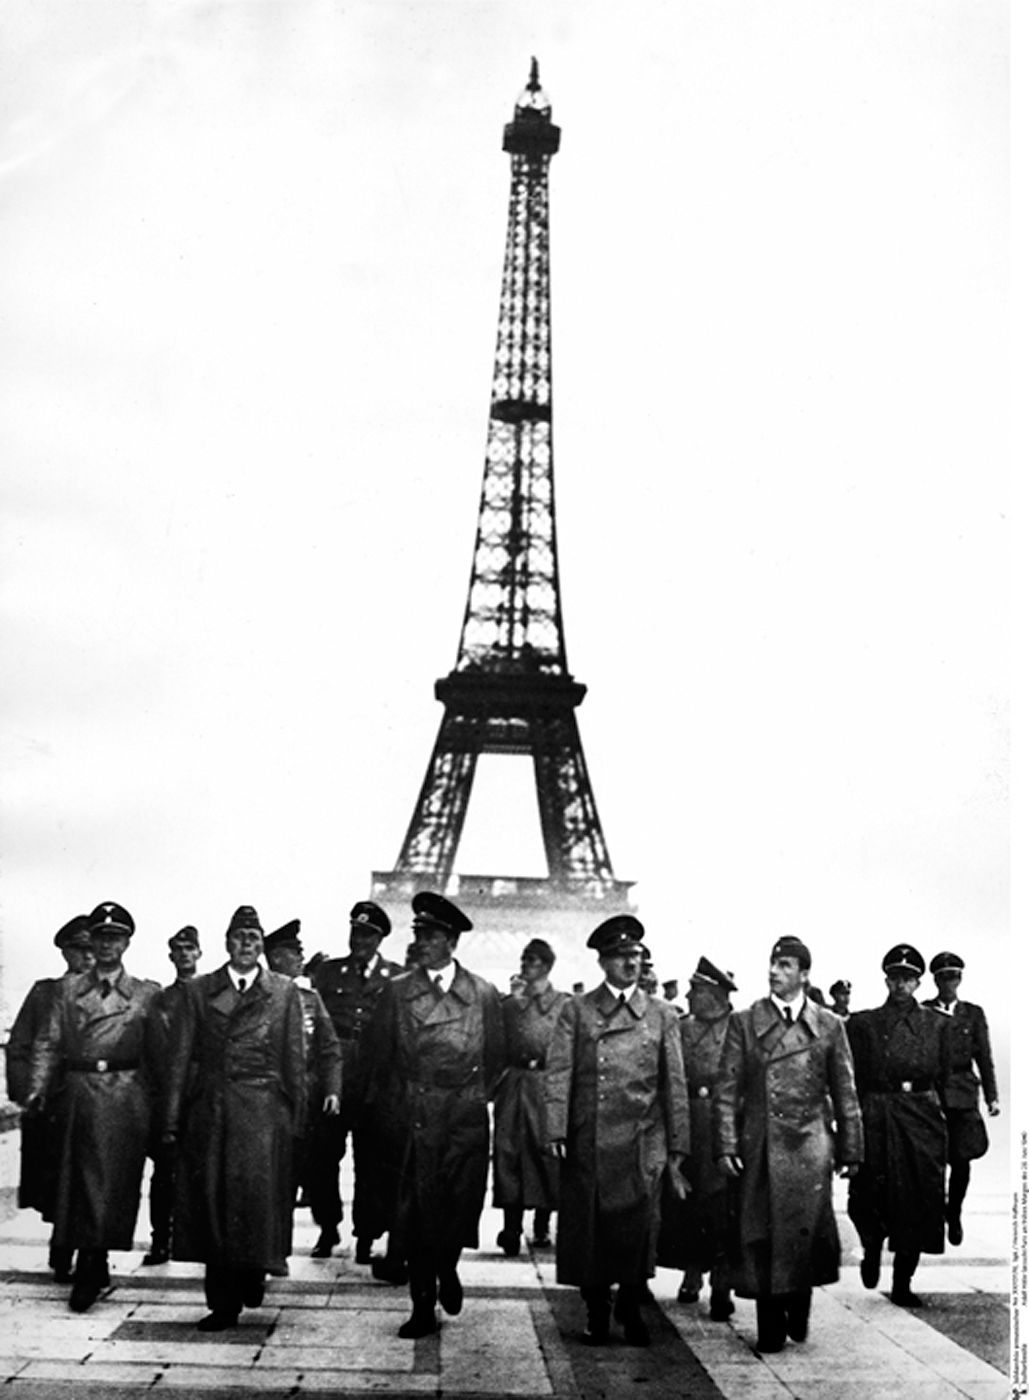 Hitler à Paris | Histoire et analyse d'images et oeuvres